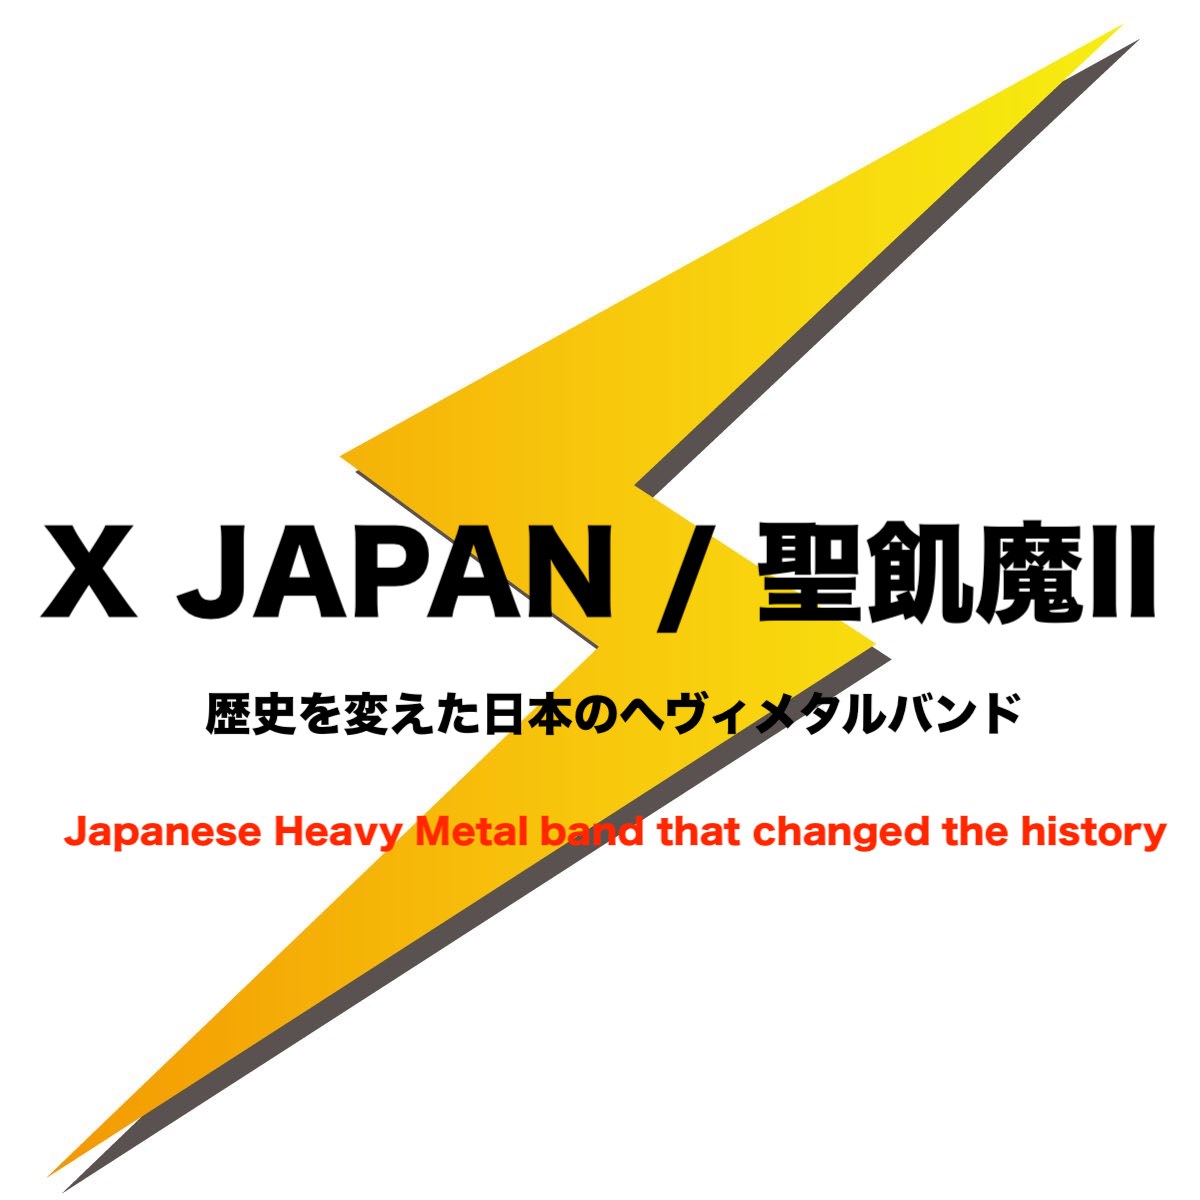 ヘヴィメタルの歴史を変えたバンド X Japan 聖飢魔ii ジャパメタ信者 フリーランスな笑い声